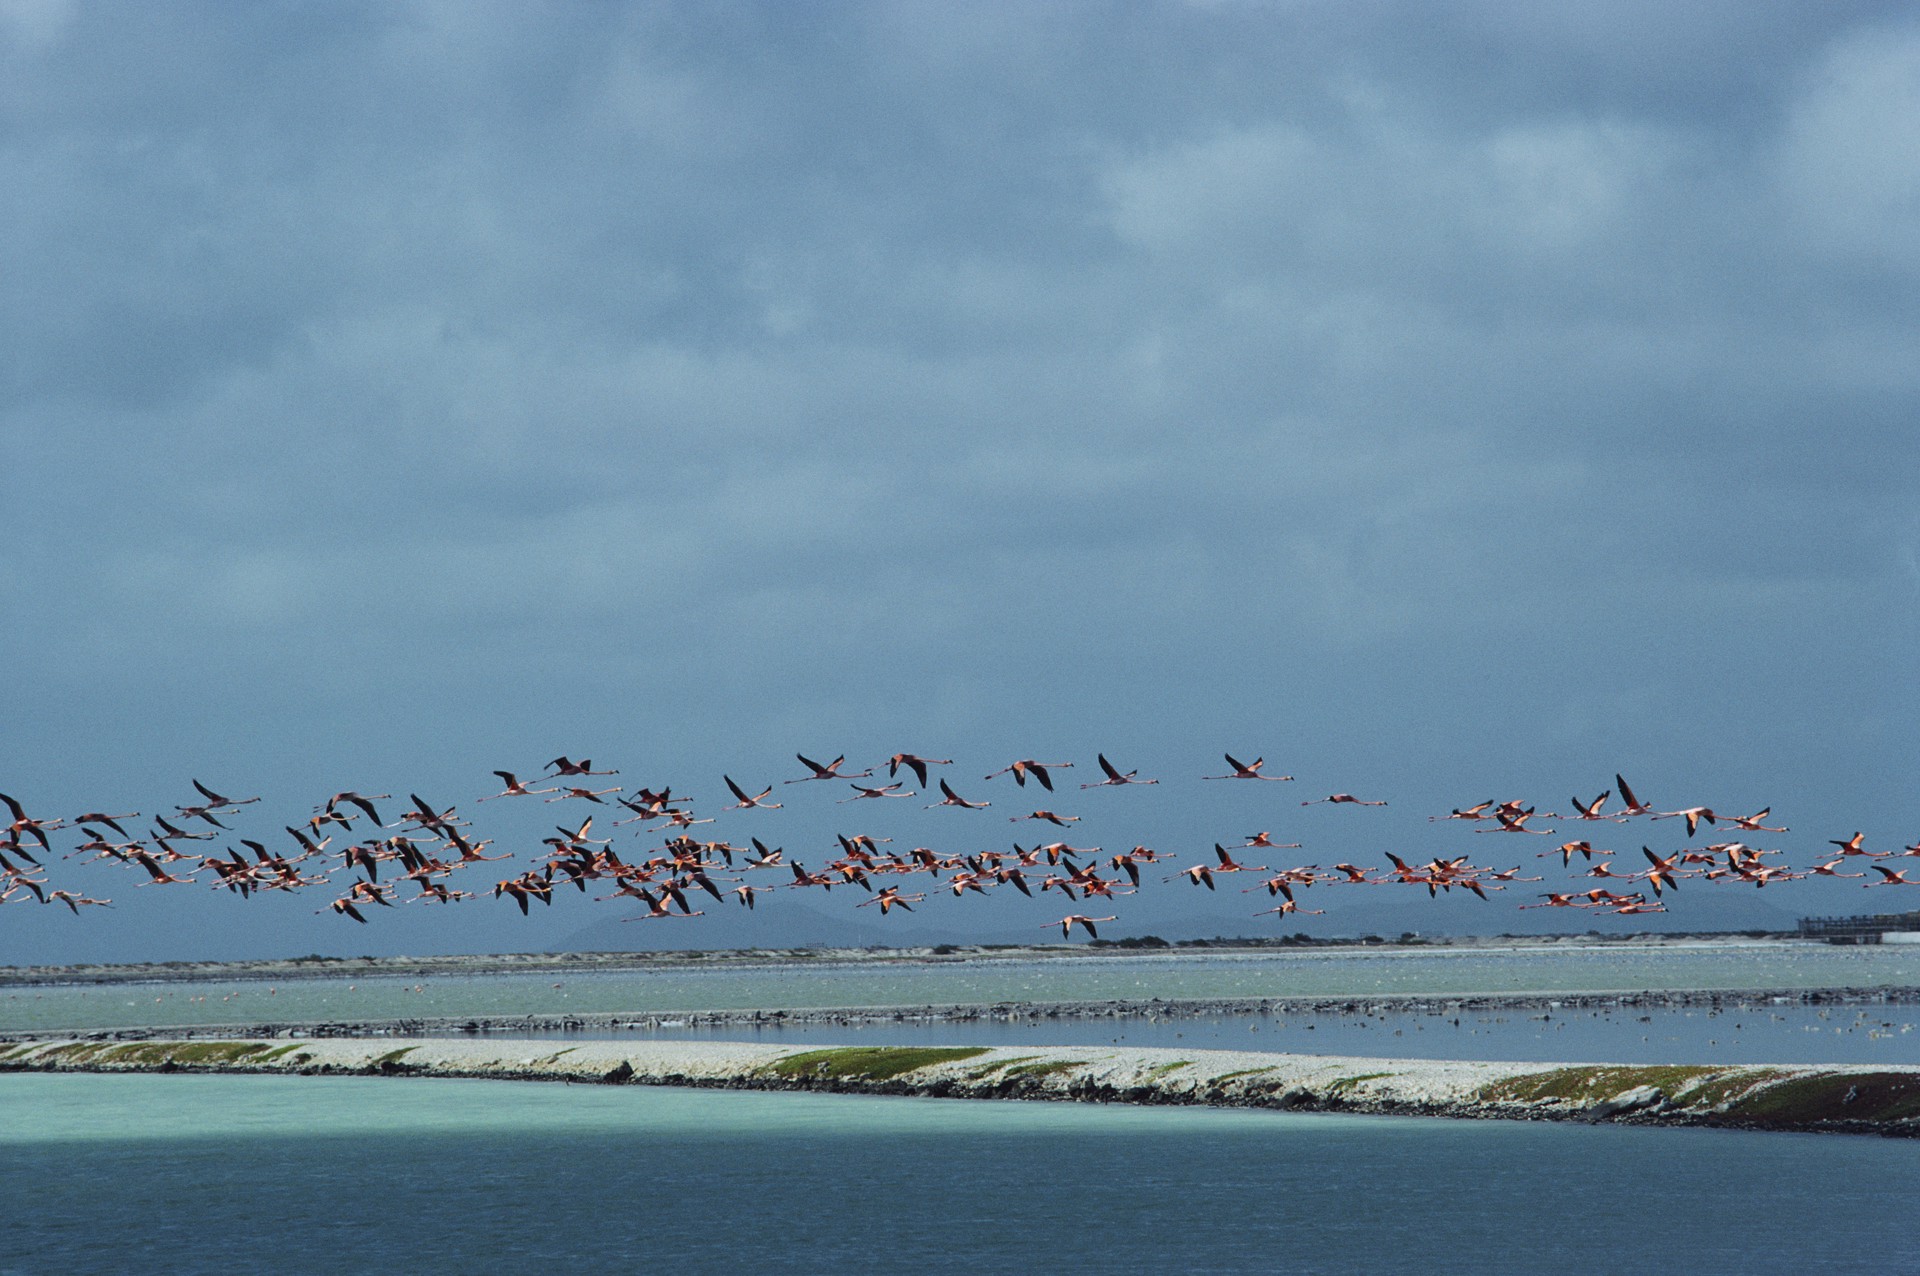 Flamingos In Flight by Slim Aarons